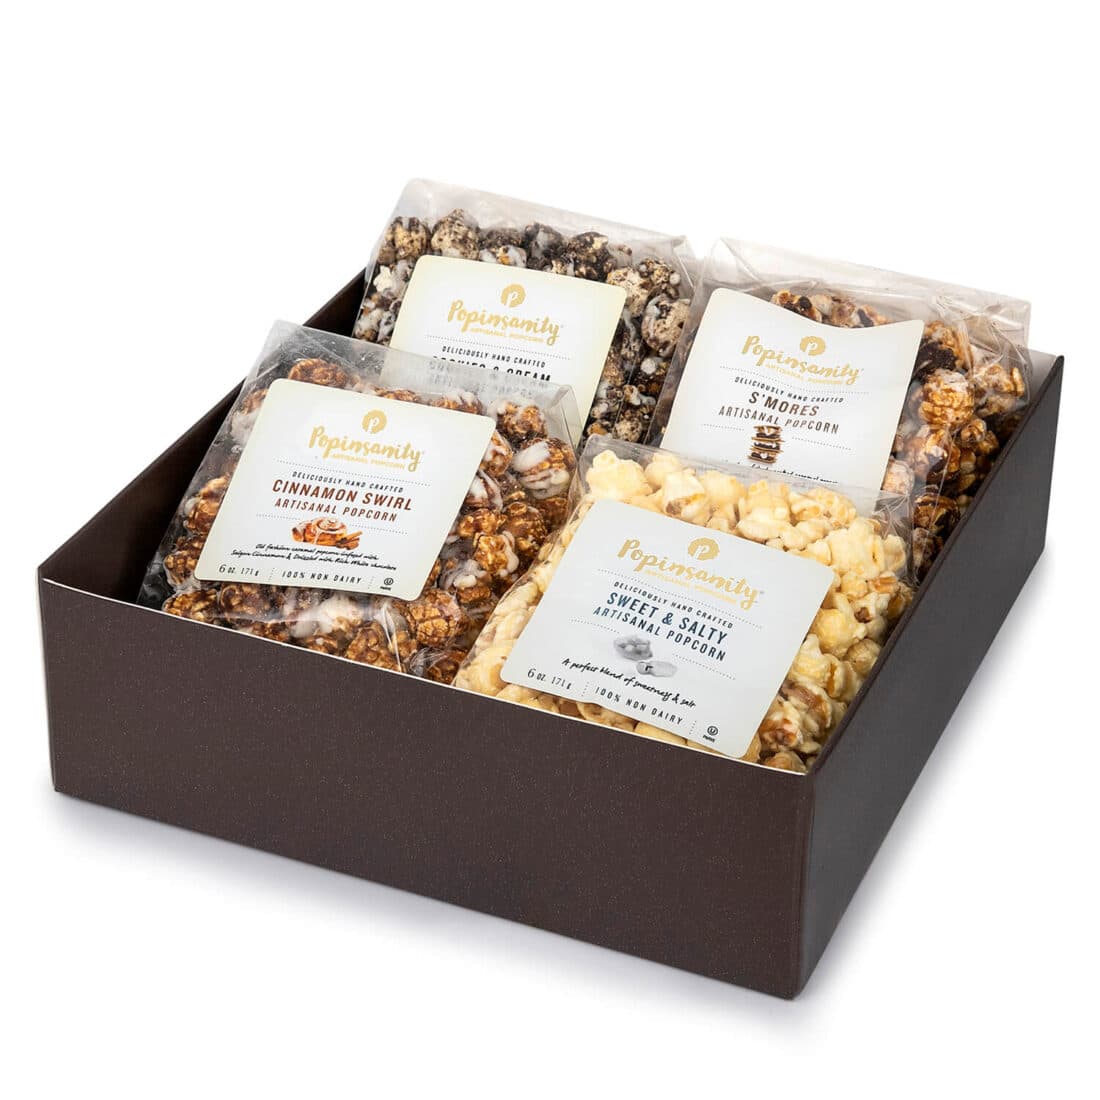 4 flavor gourmet popcorn gift set